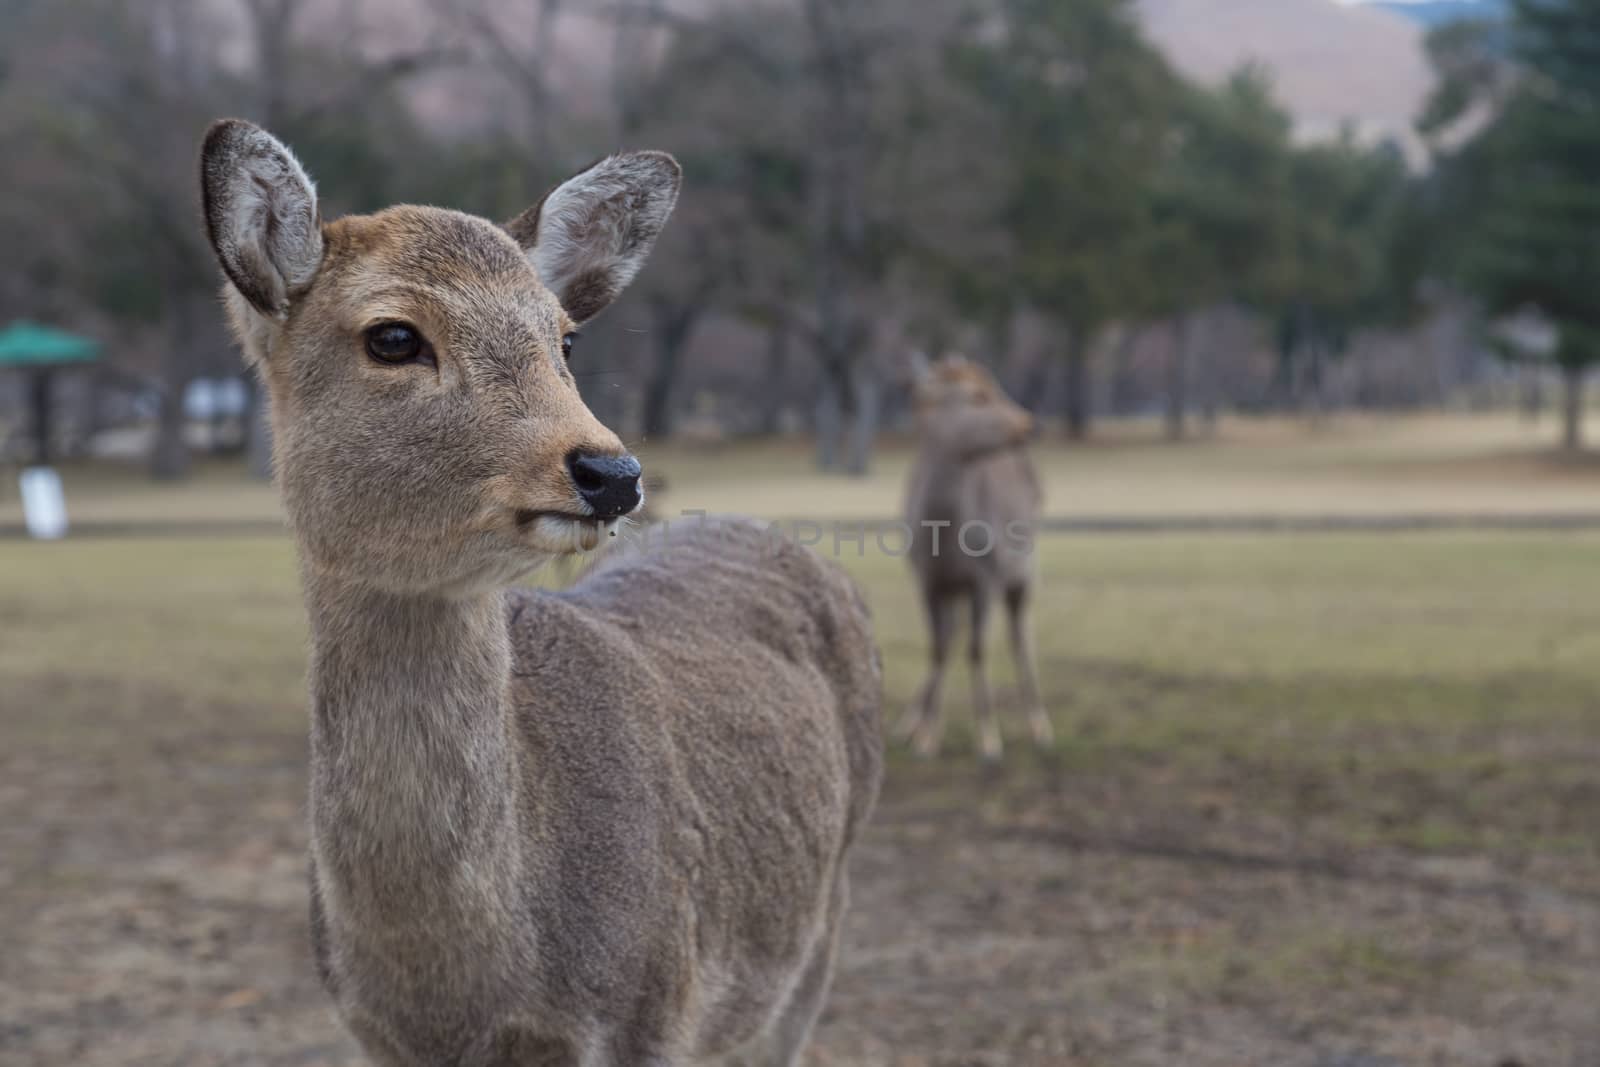 Deer in Nara Park, Japan by oliverfoerstner